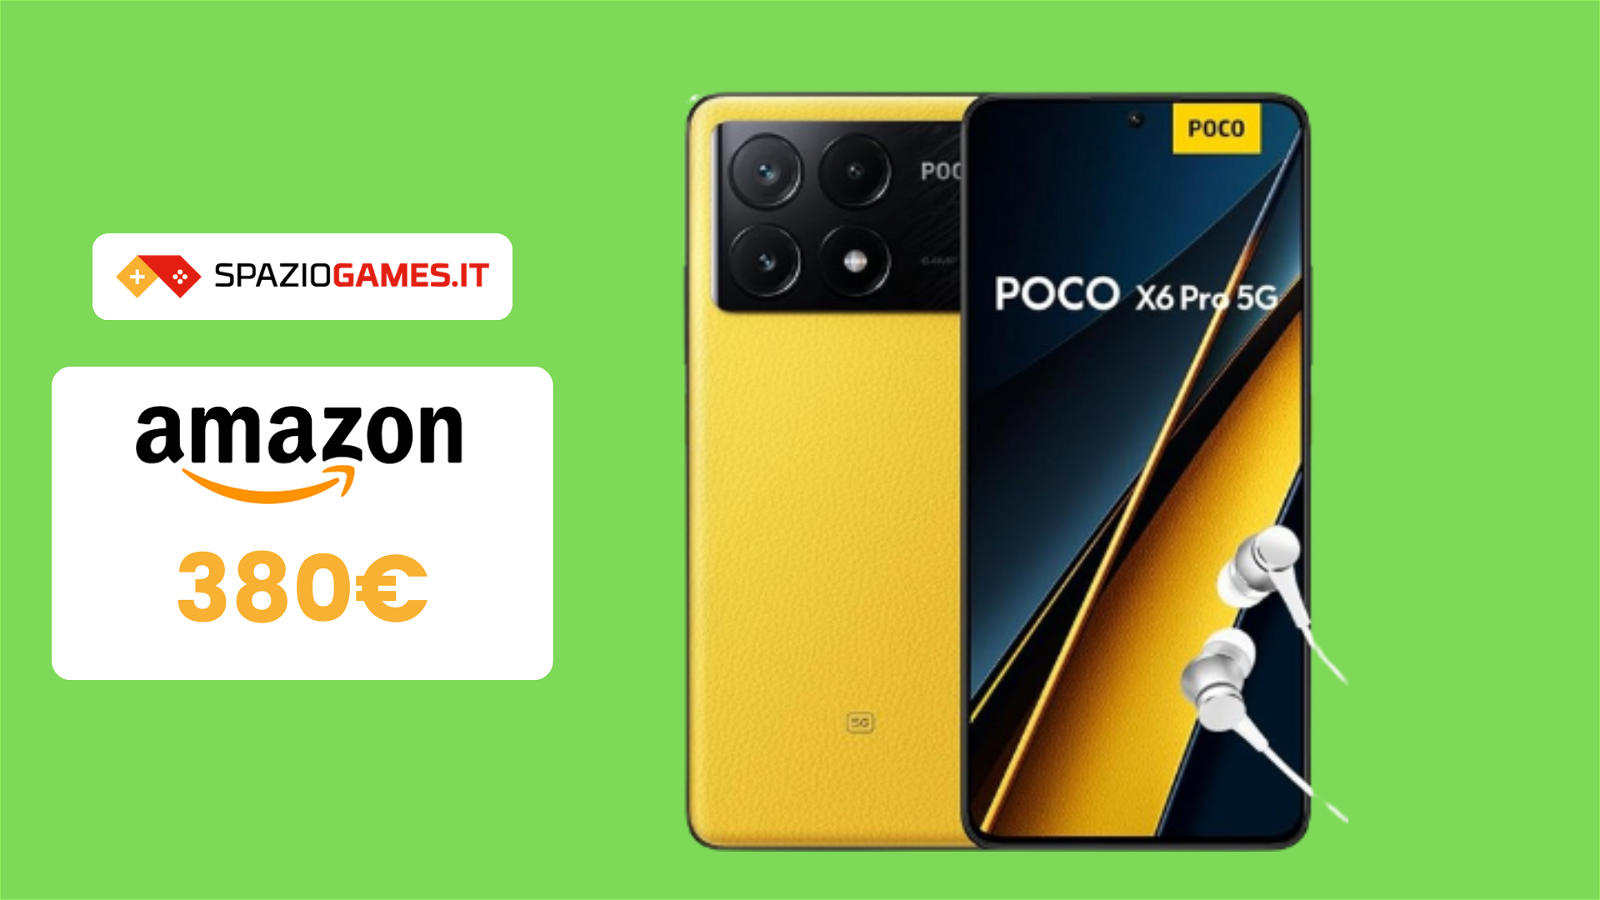 ESCLUSIVA Amazon: POCO X6 Pro a 380€!